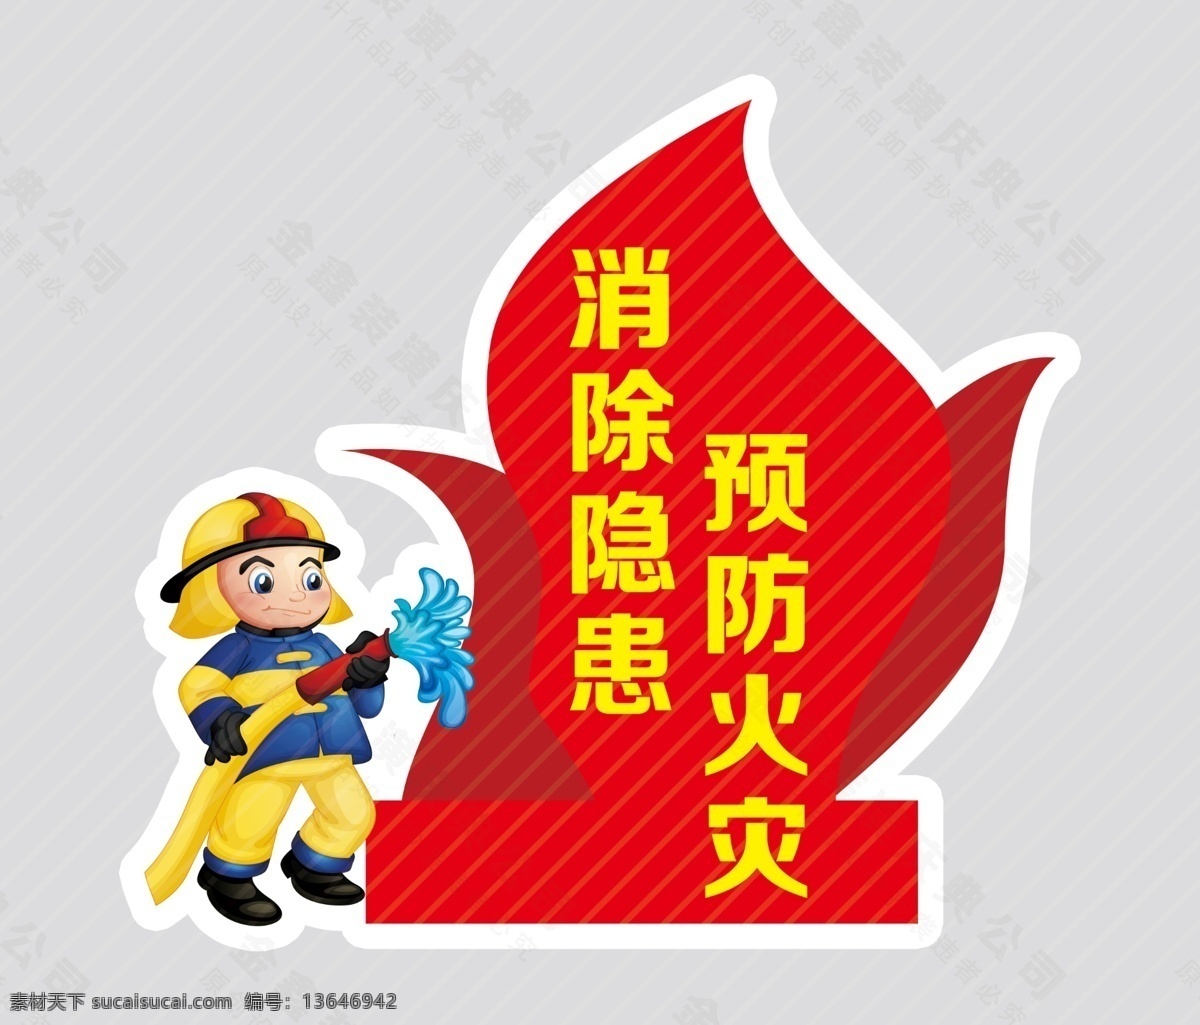 消防安全 消防图 消防卡通图 消防 卡通消防 分层